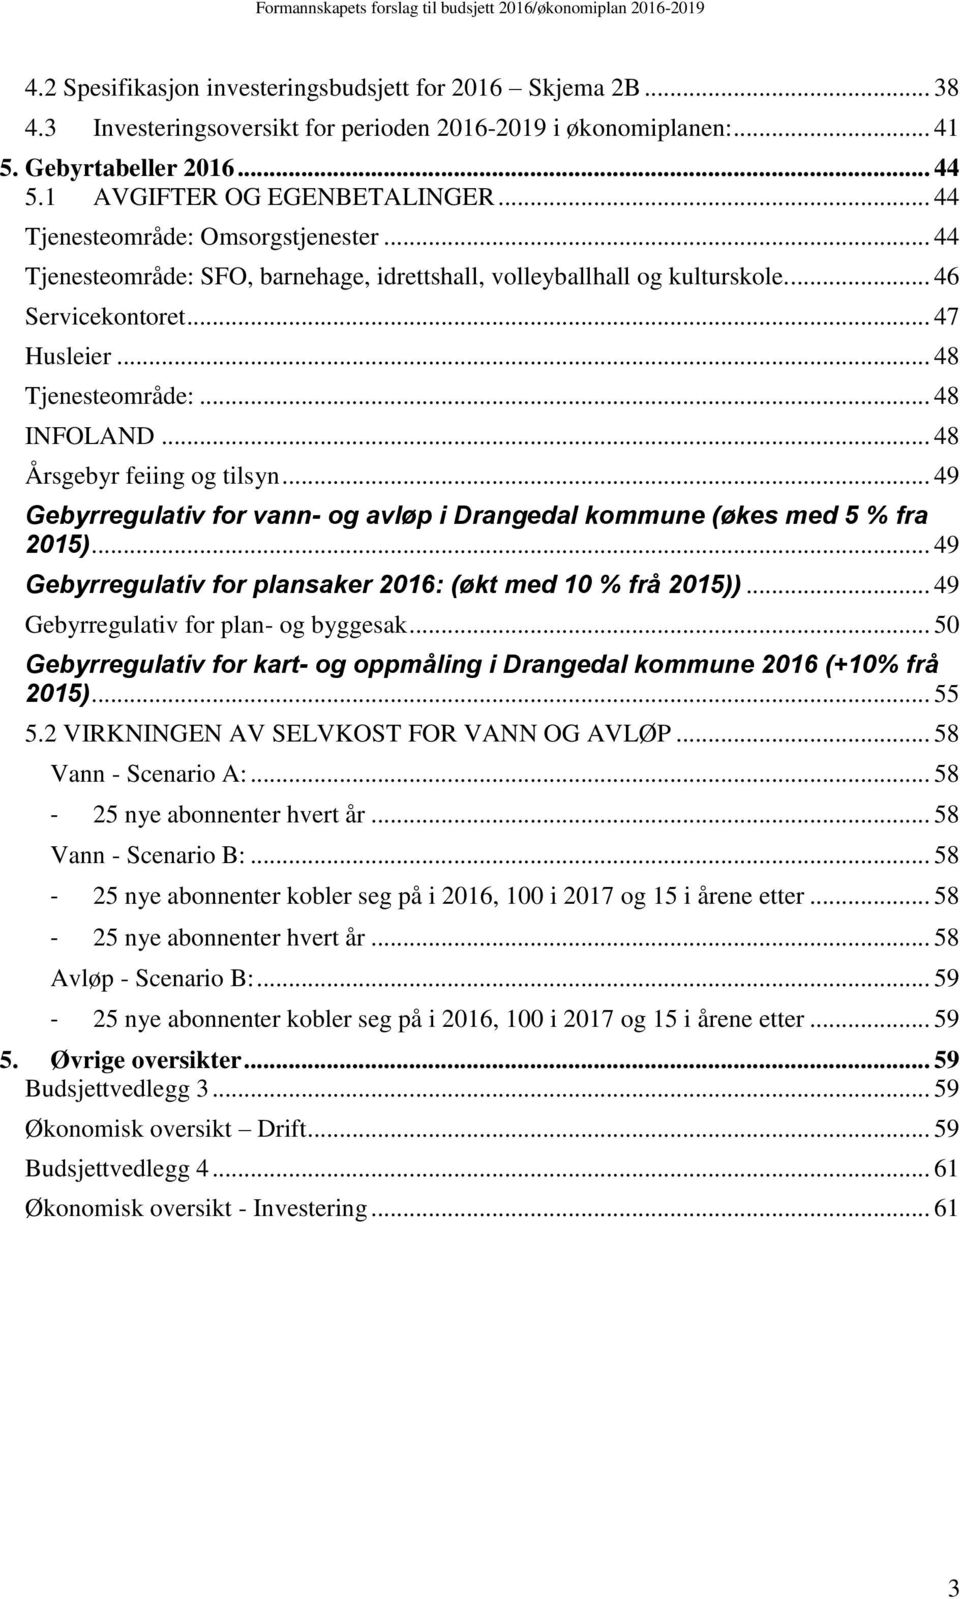 .. 48 Årsgebyr feiing og tilsyn... 49 Gebyrregulativ for vann- og avløp i Drangedal kommune (økes med 5 % fra 2015)... 49 Gebyrregulativ for plansaker 2016: (økt med 10 % frå 2015)).